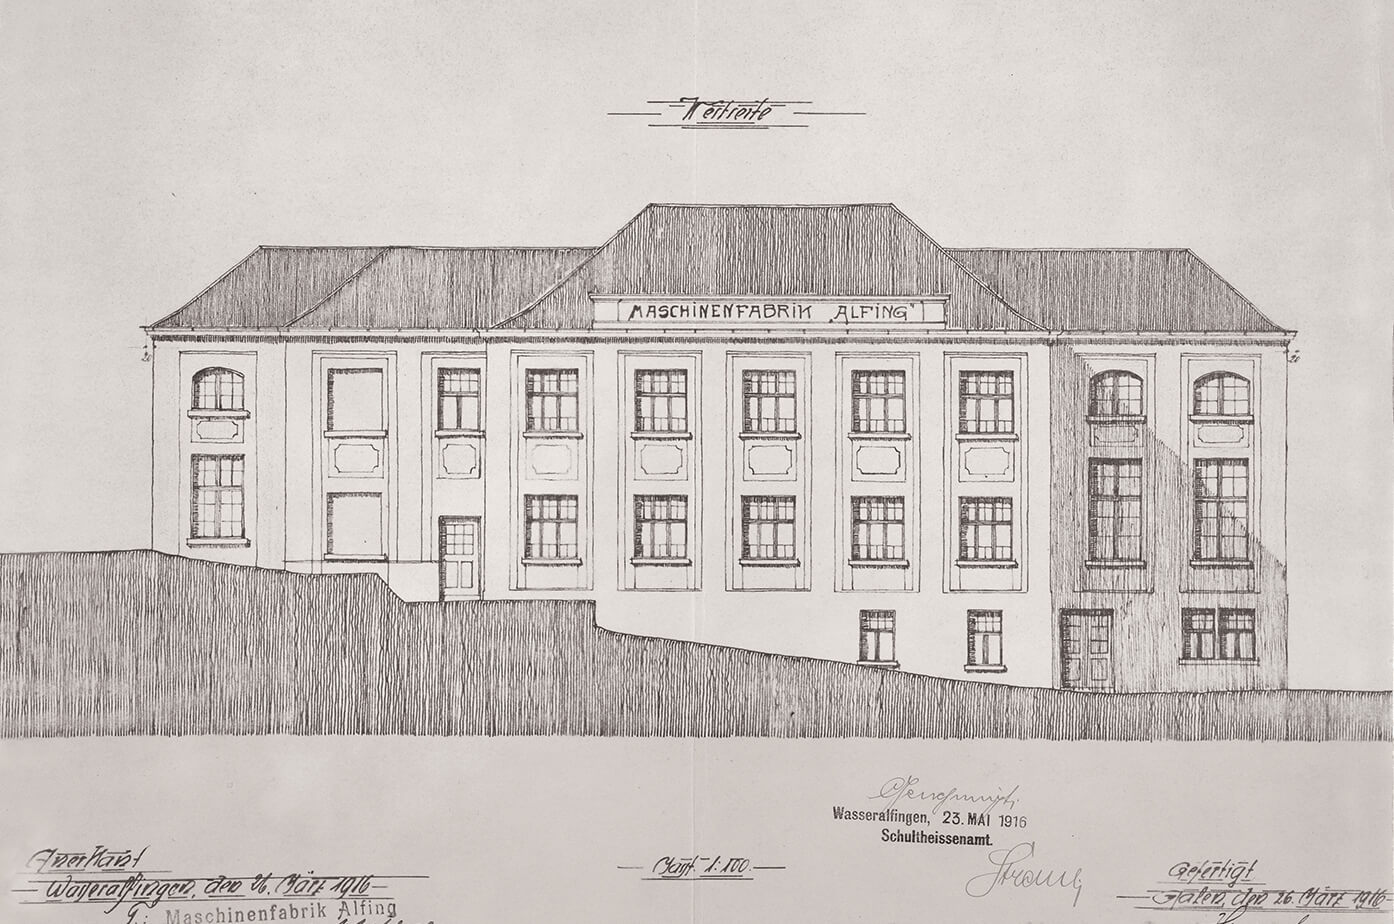 1966 Change of name to Maschinenfabrik ALFING Kessler GmbH